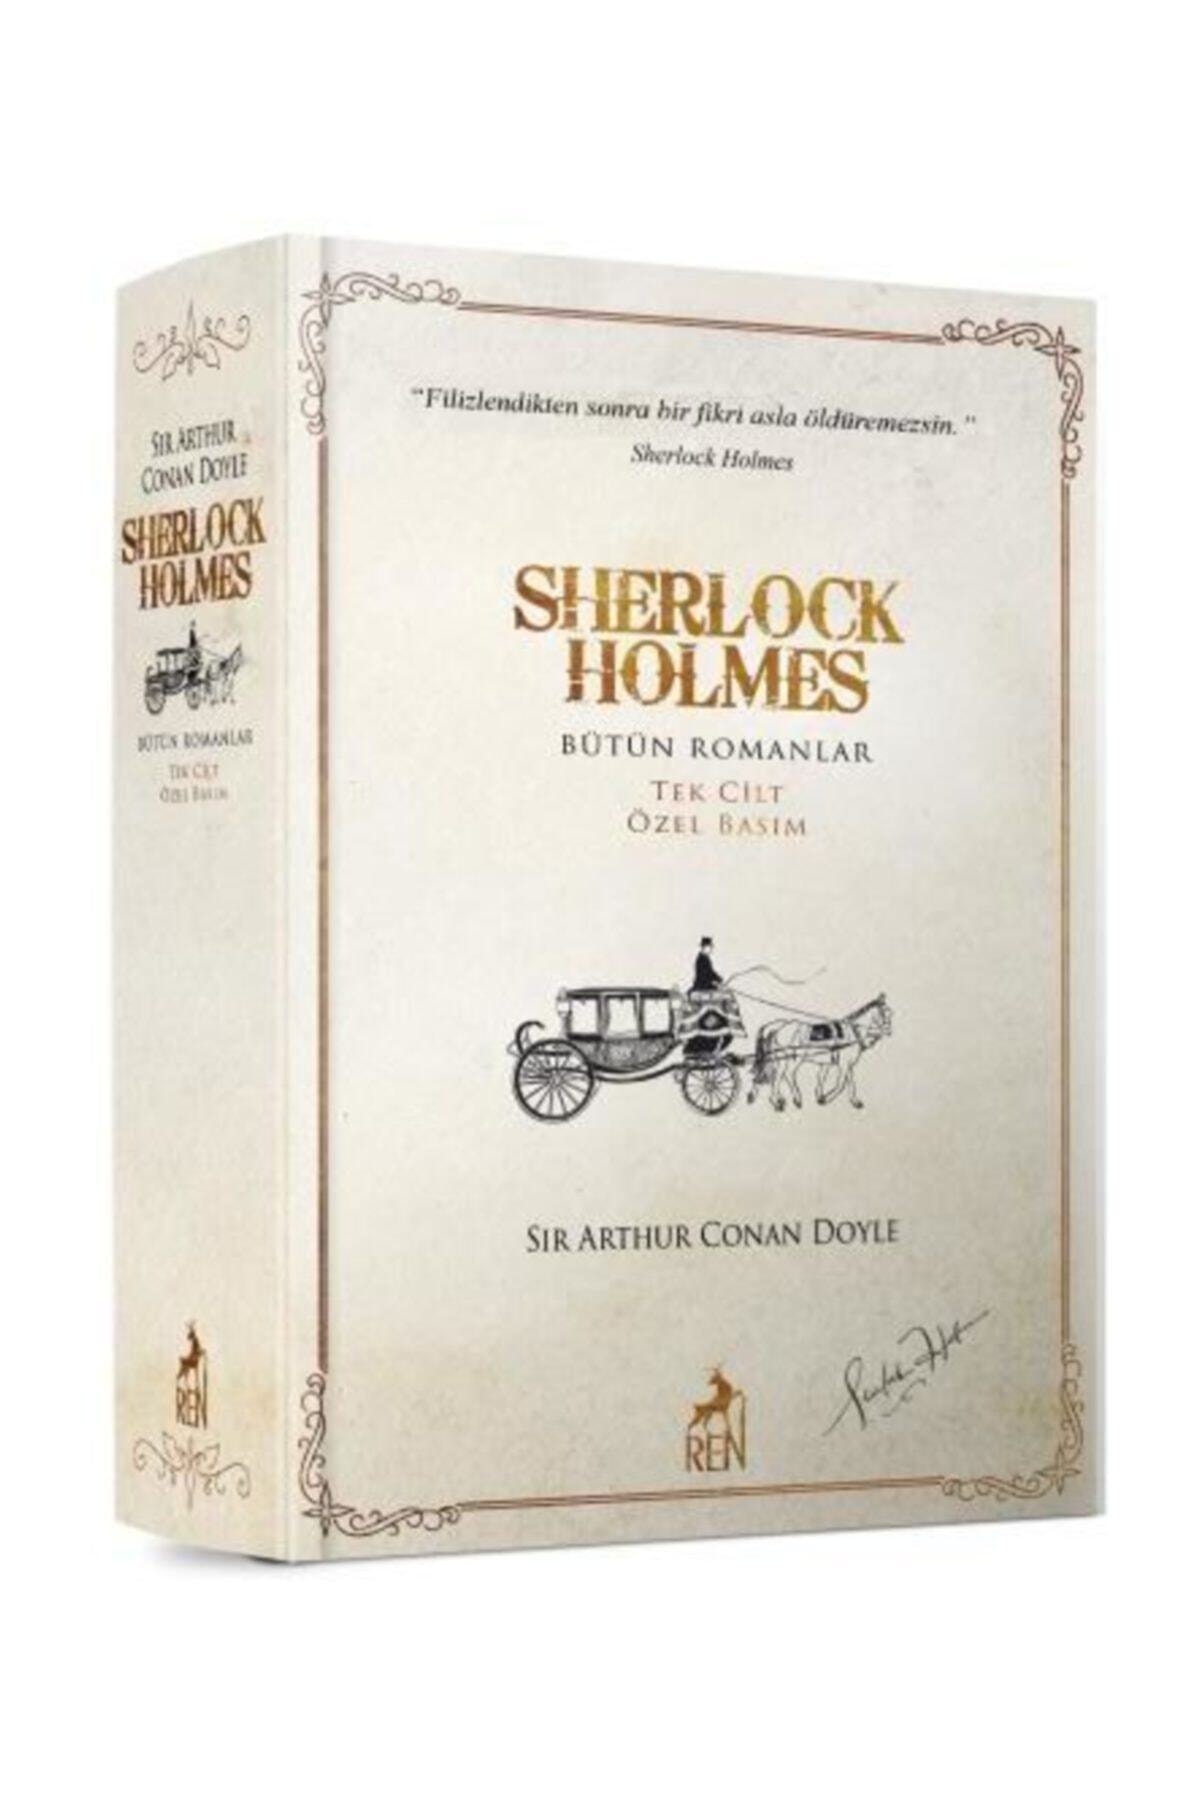 Ren Kitap Sherlock Holmes Bütün Romanlar Tek Cilt Özel Basım - Sir Arthur Conan Doyle